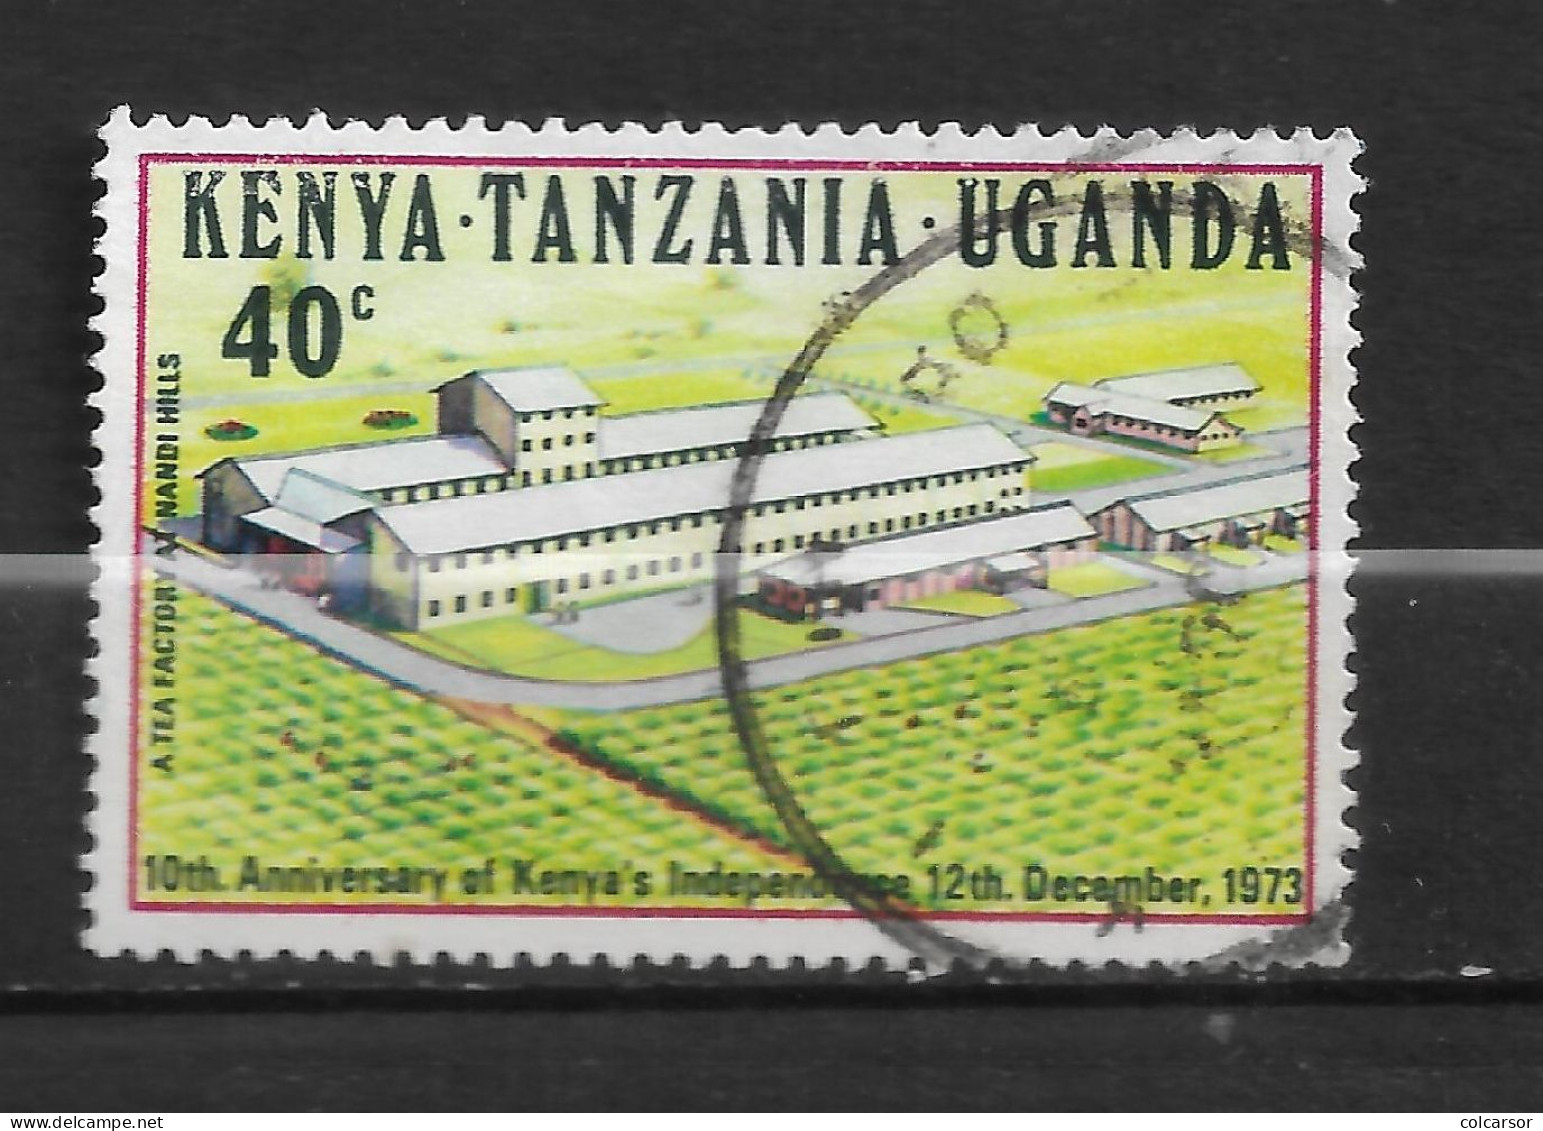 TANZANIE "N°260 - Tanzanie (1964-...)